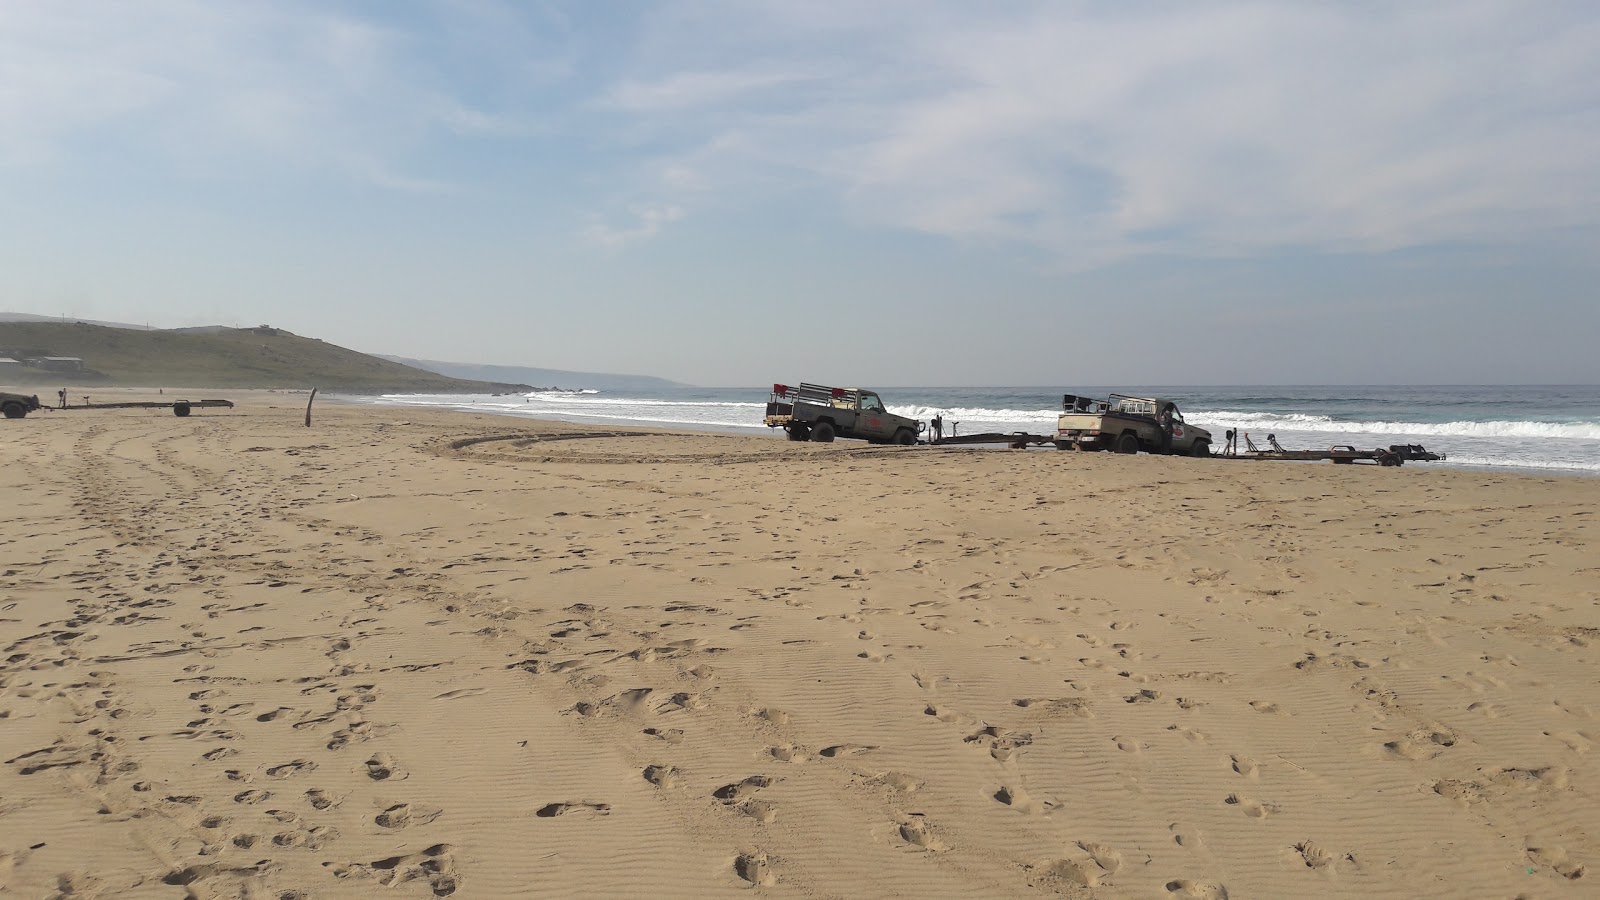 Fotografie cu Mbotyi beach cu plajă spațioasă